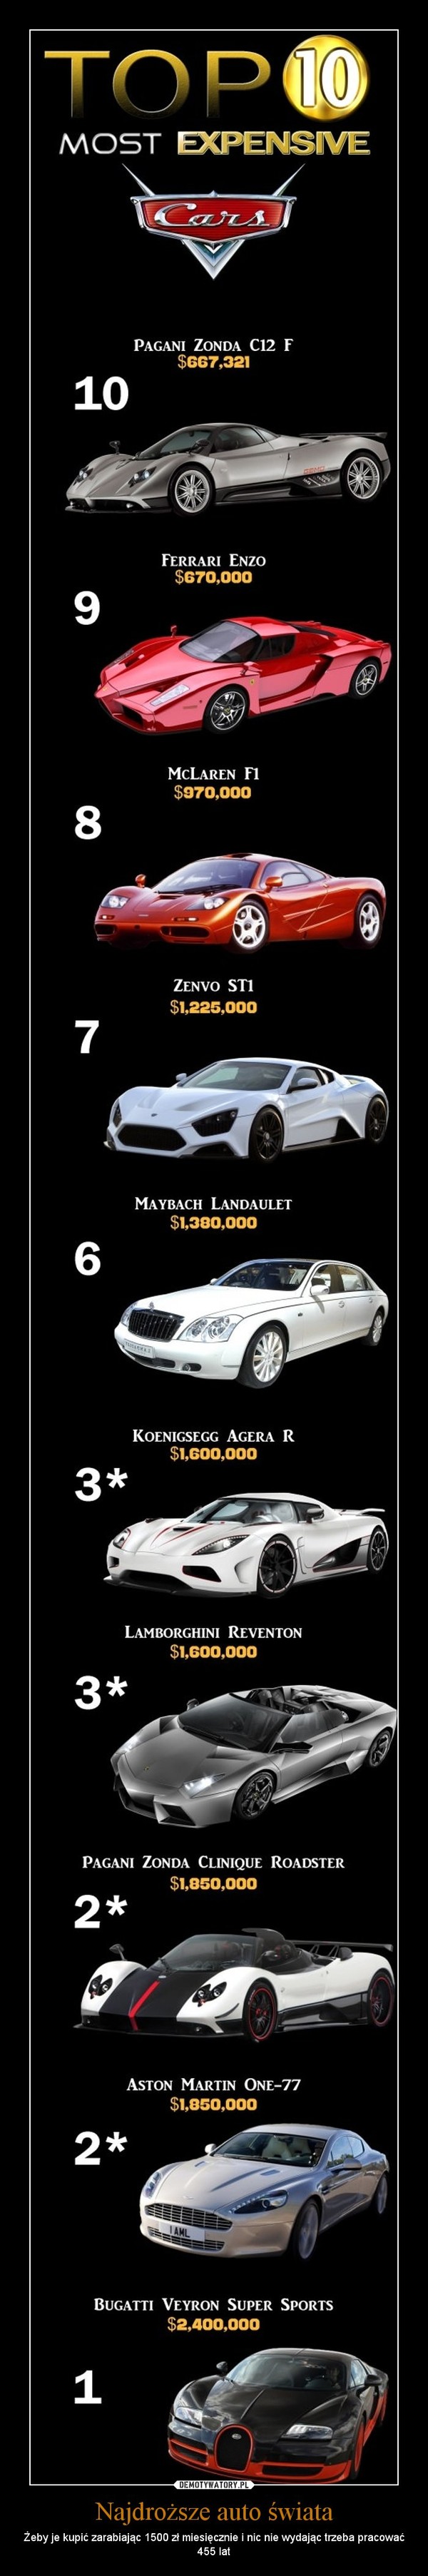 Najdroższe auto świata – Żeby je kupić zarabiając 1500 zł miesięcznie i nic nie wydając trzeba pracować 455 lat 